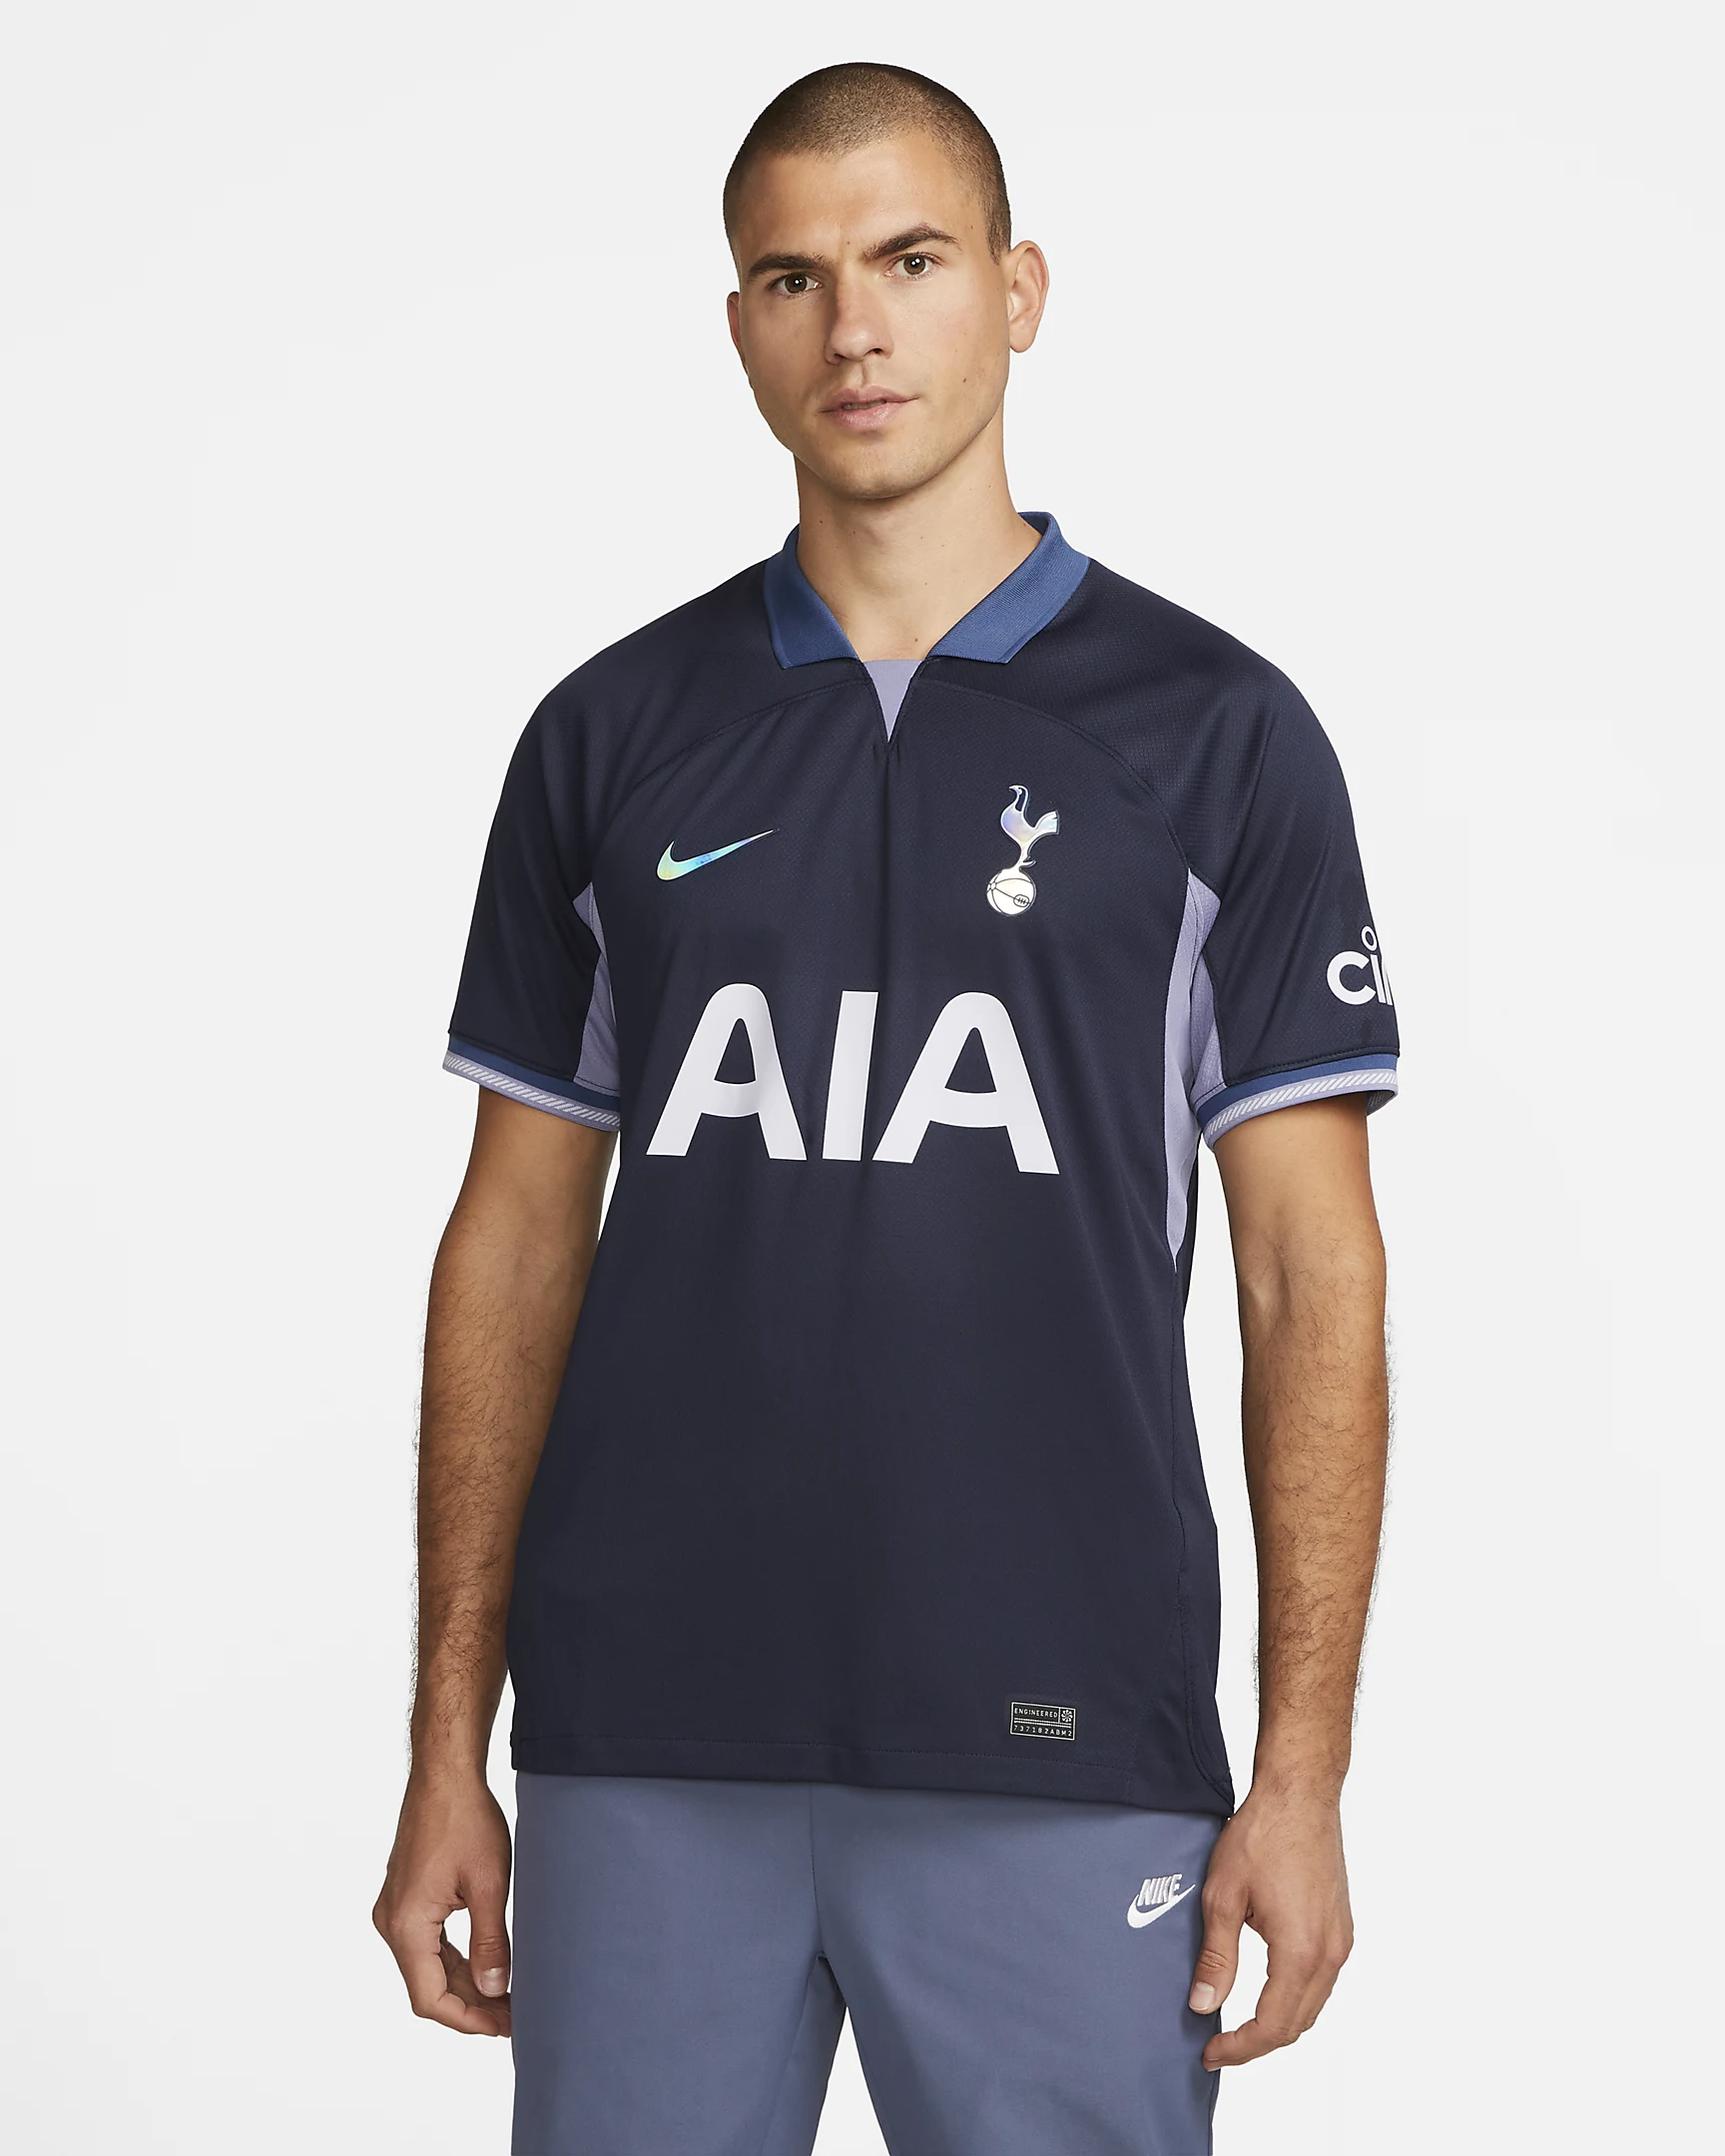 Tottenham Hotspur FC Football Shirts, Tottenham Shirt